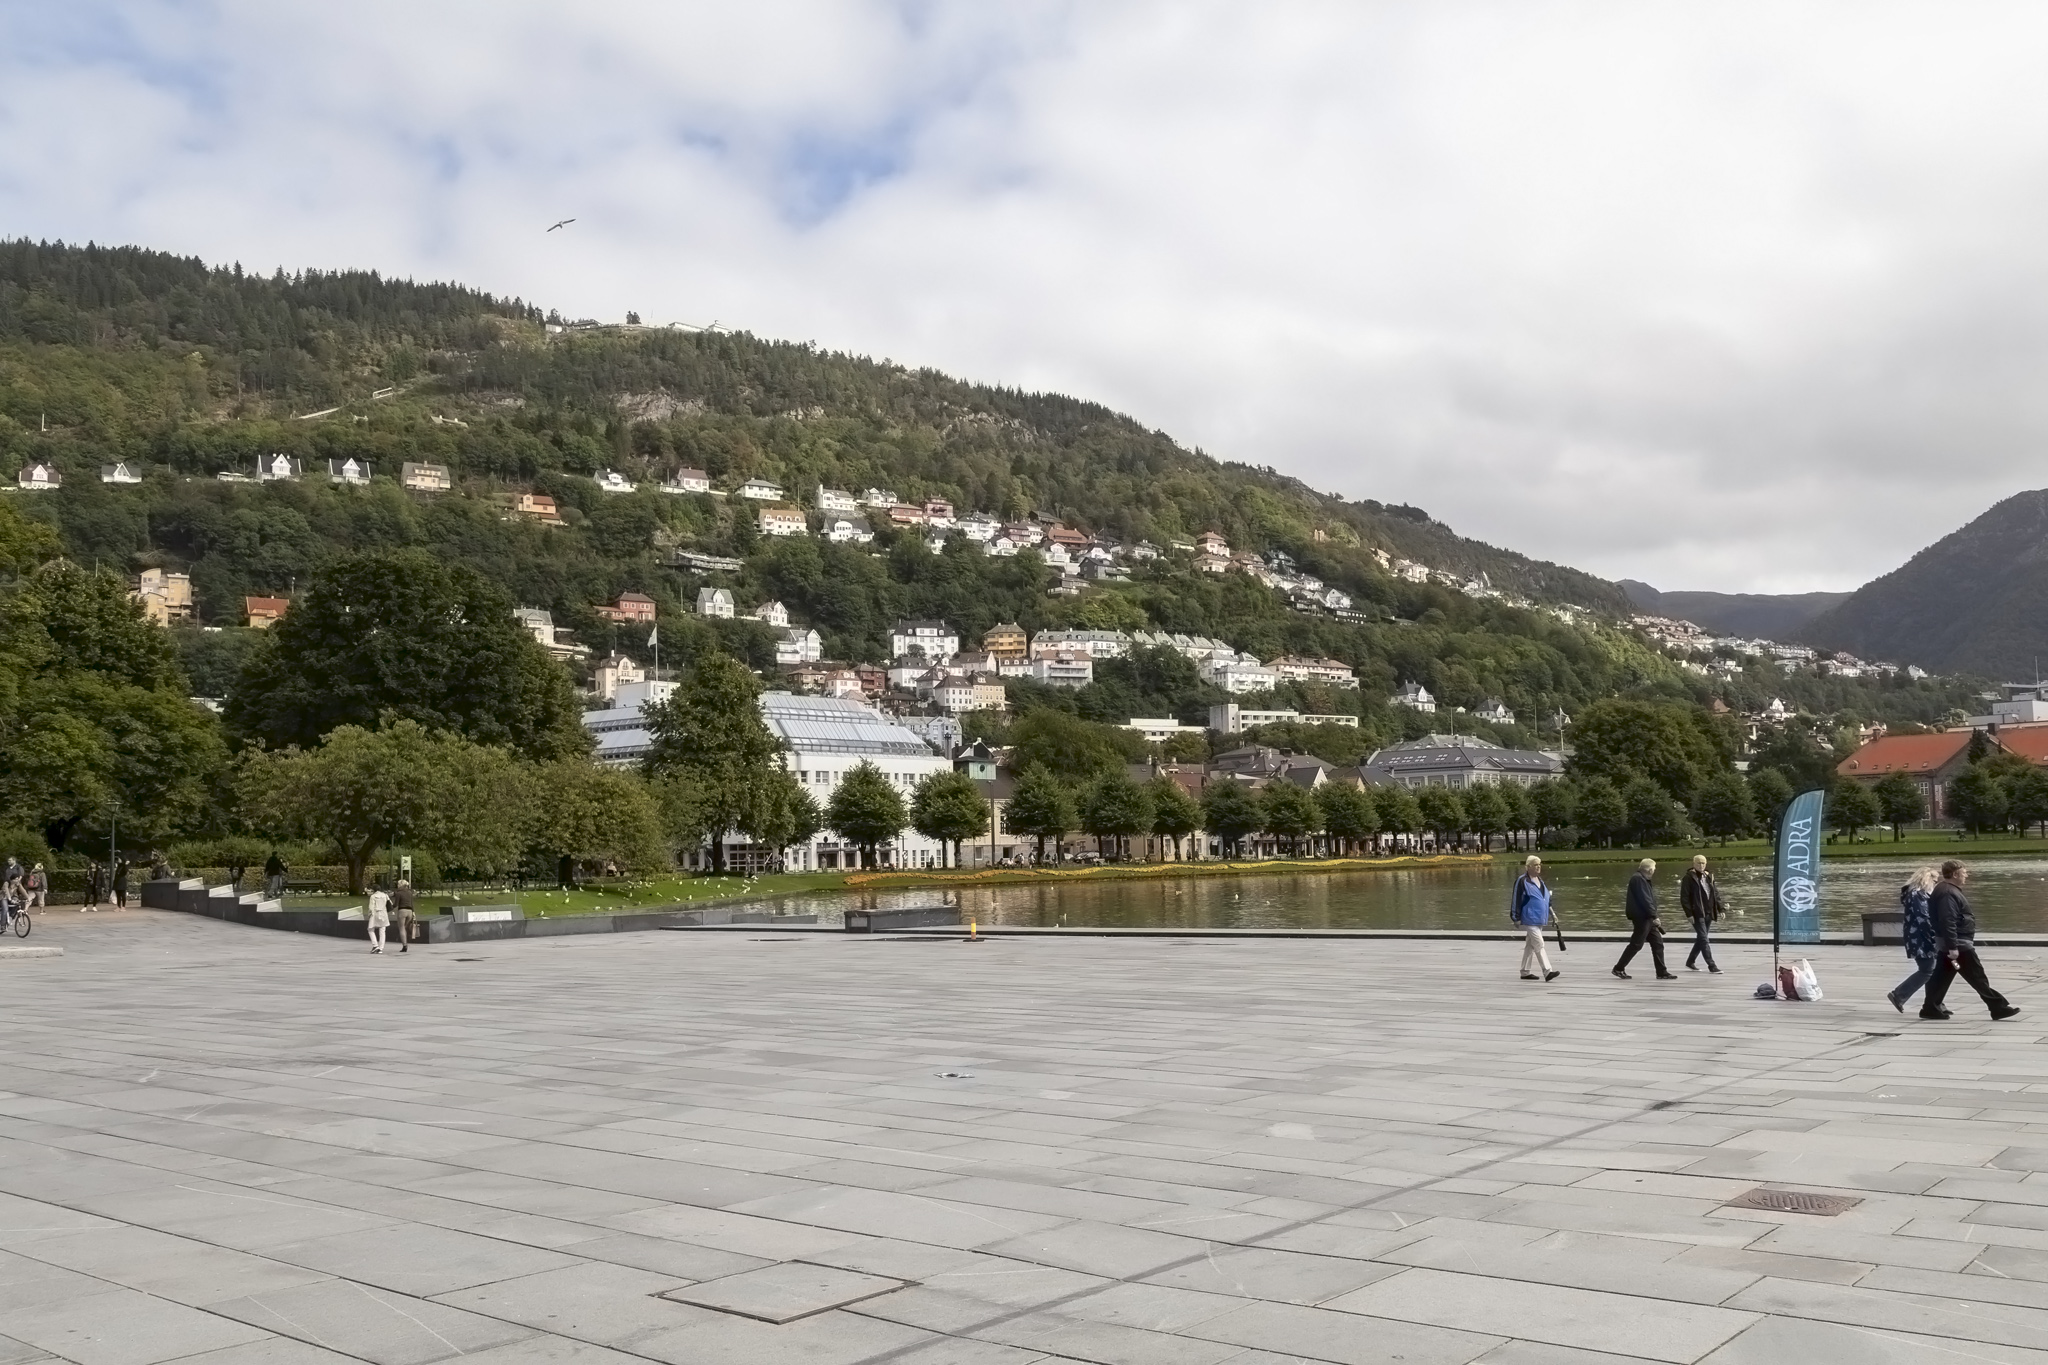 Festplassen, Bergen